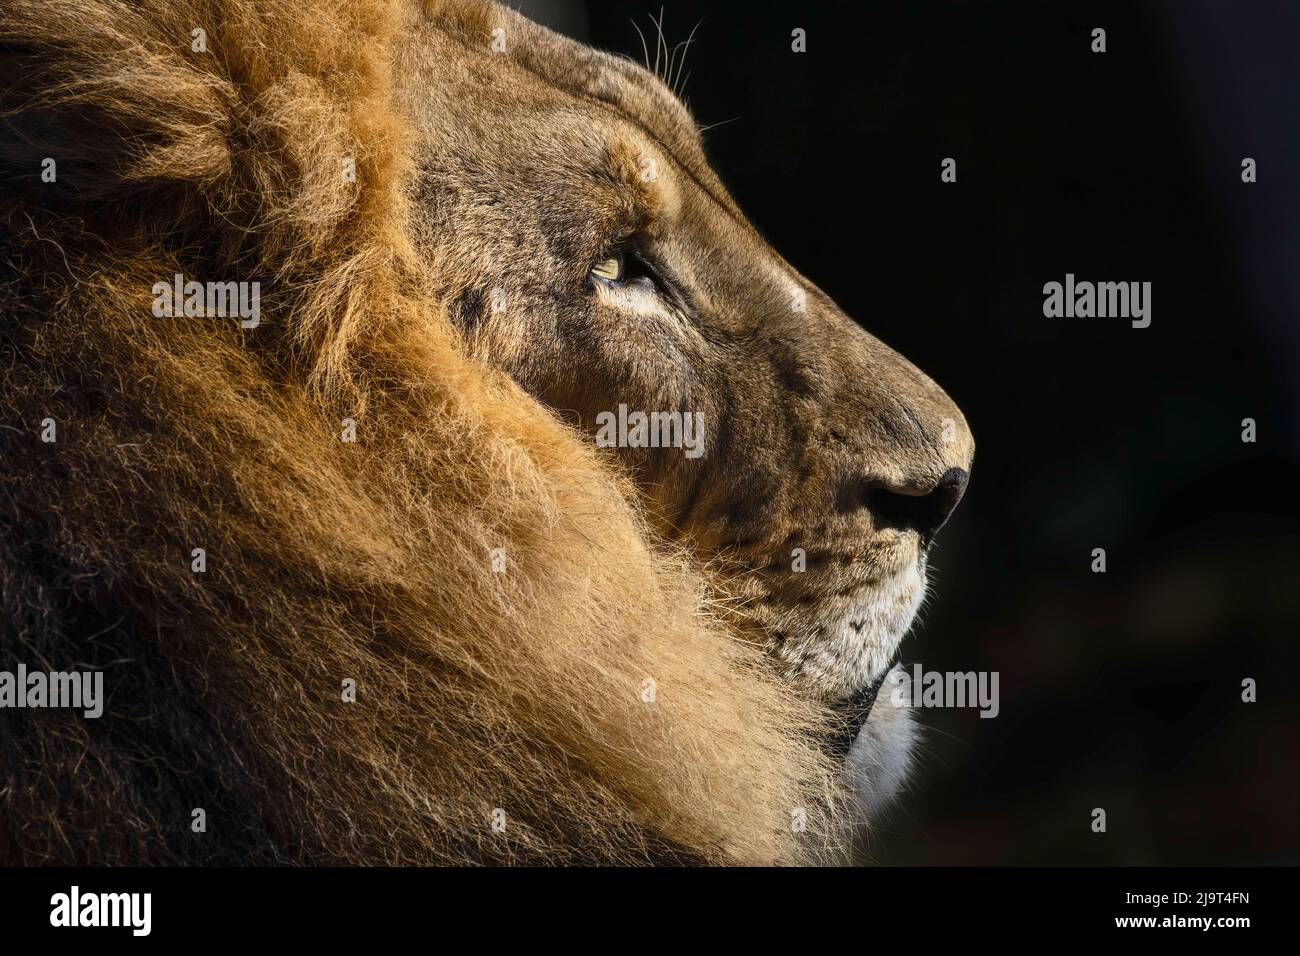 León macho adulto grande, zoológico de Cincinnati (sólo para uso editorial) Foto de stock